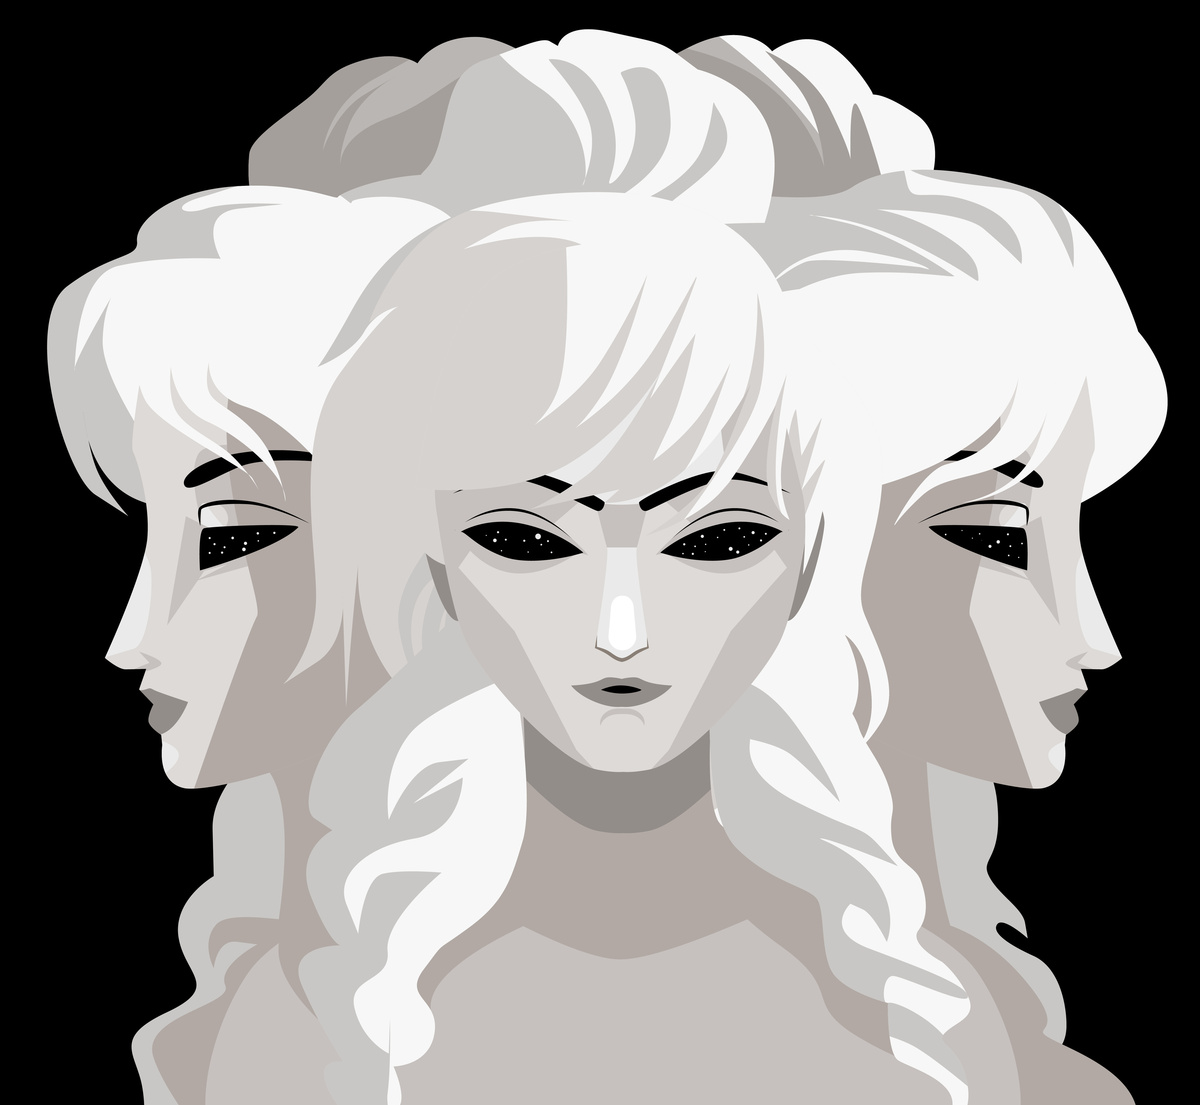 Ilustração da divindade tripla da deusa Hécate